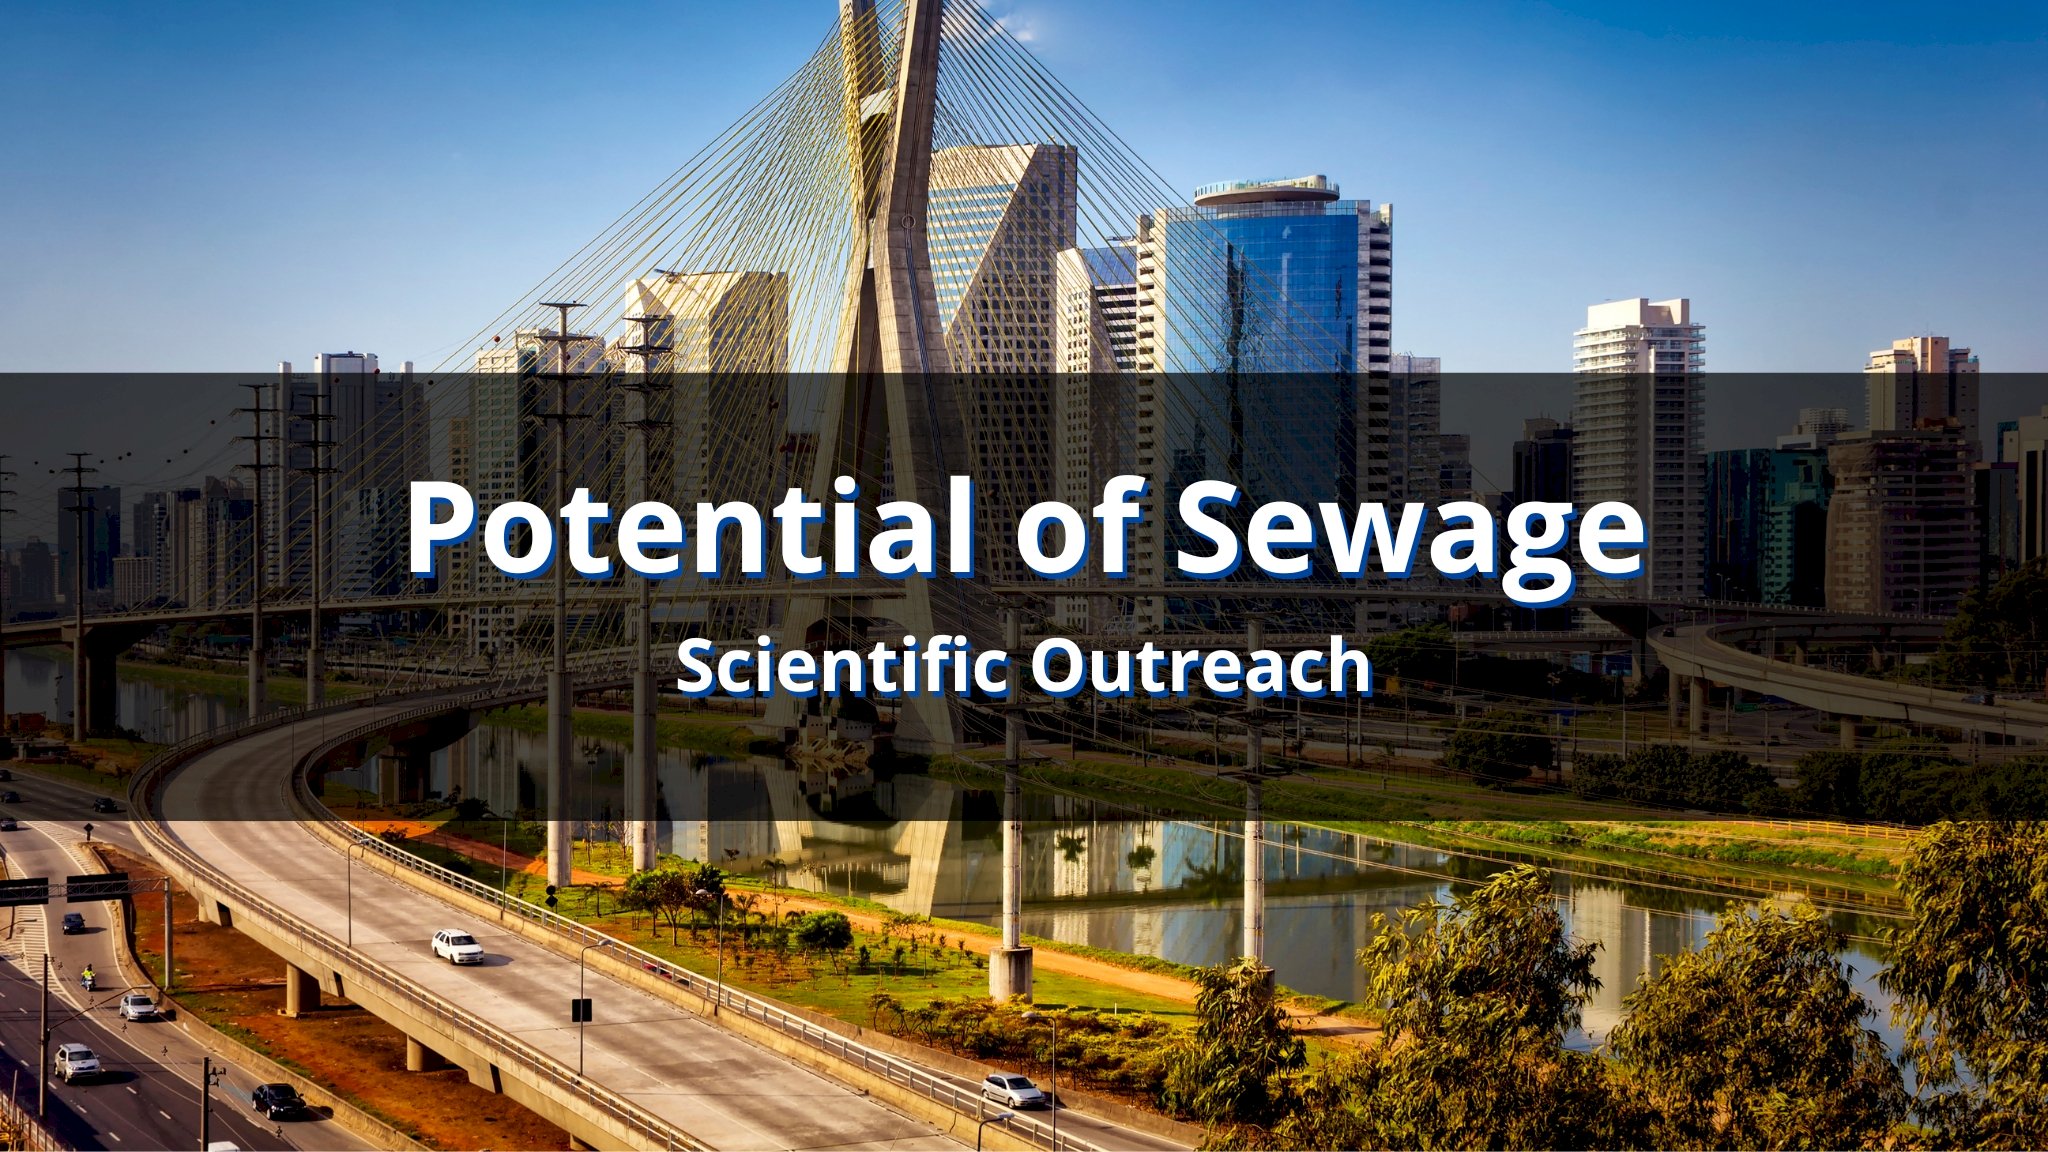 Sewage to Biomethane: São Paulo's Potential